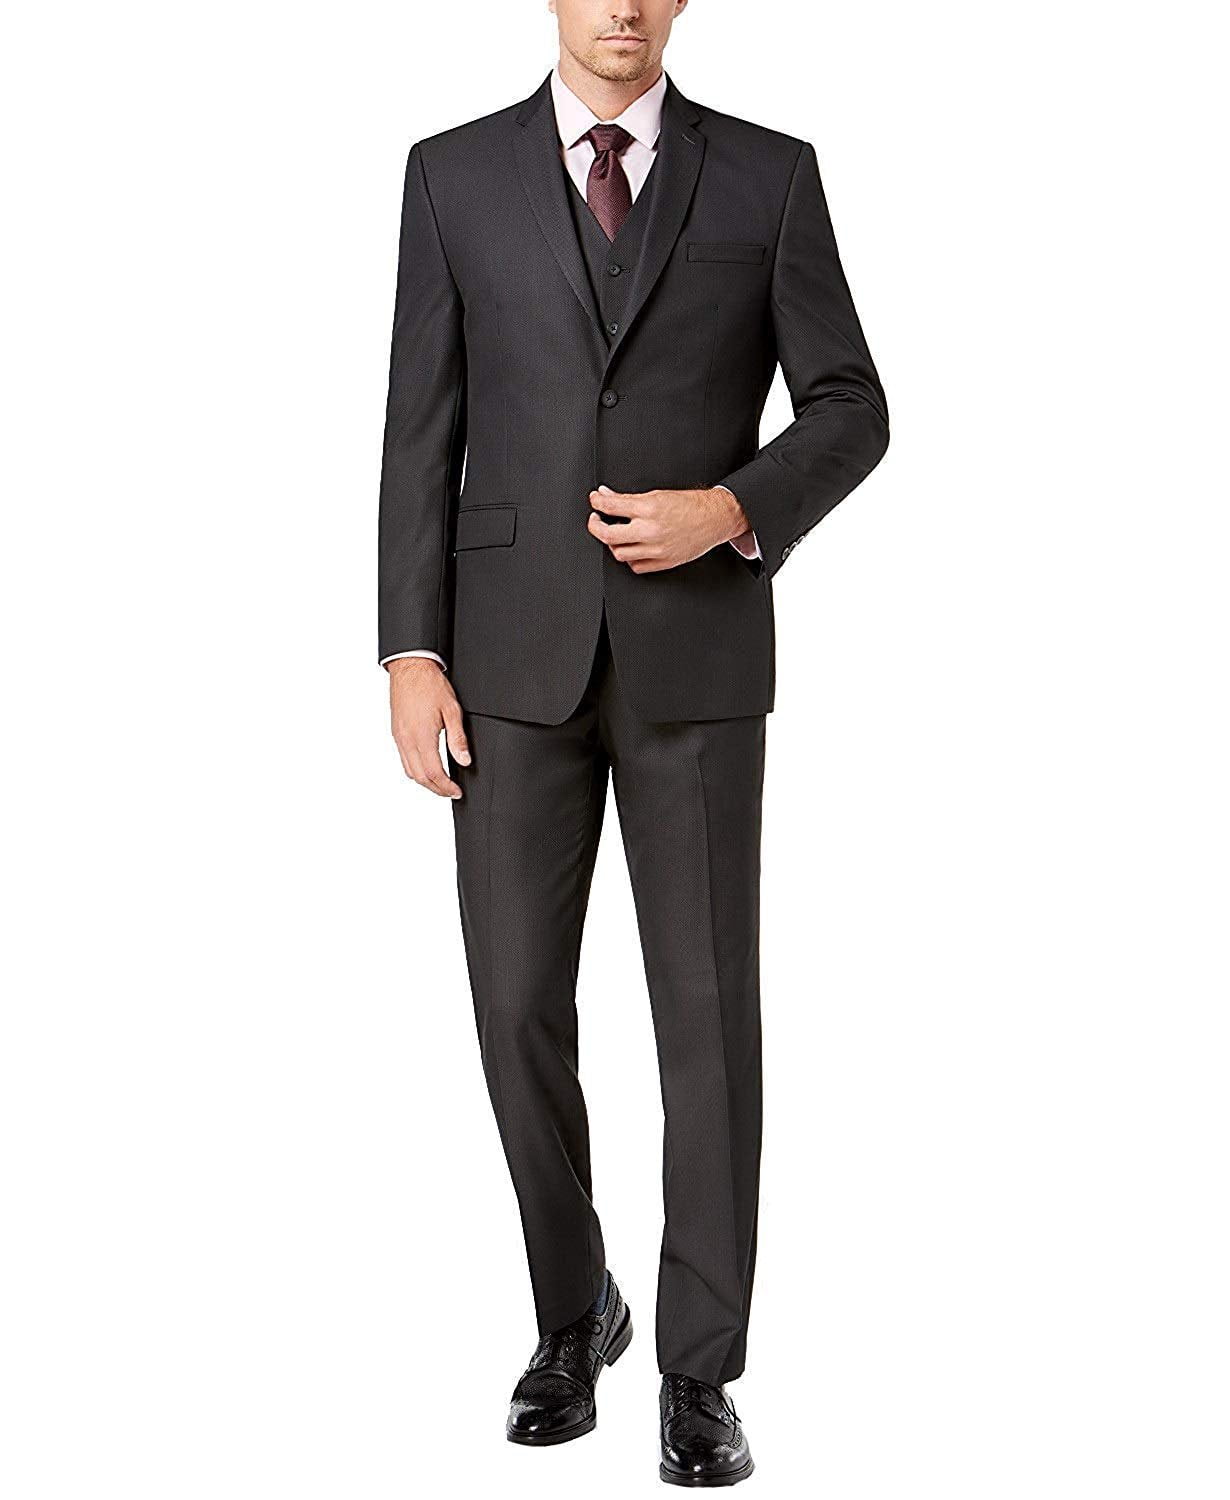 New Gold Black Lapel Tuxedos Coat Jacket Men's Suit Slim Fit 40r 42r 44r 46r 46l 